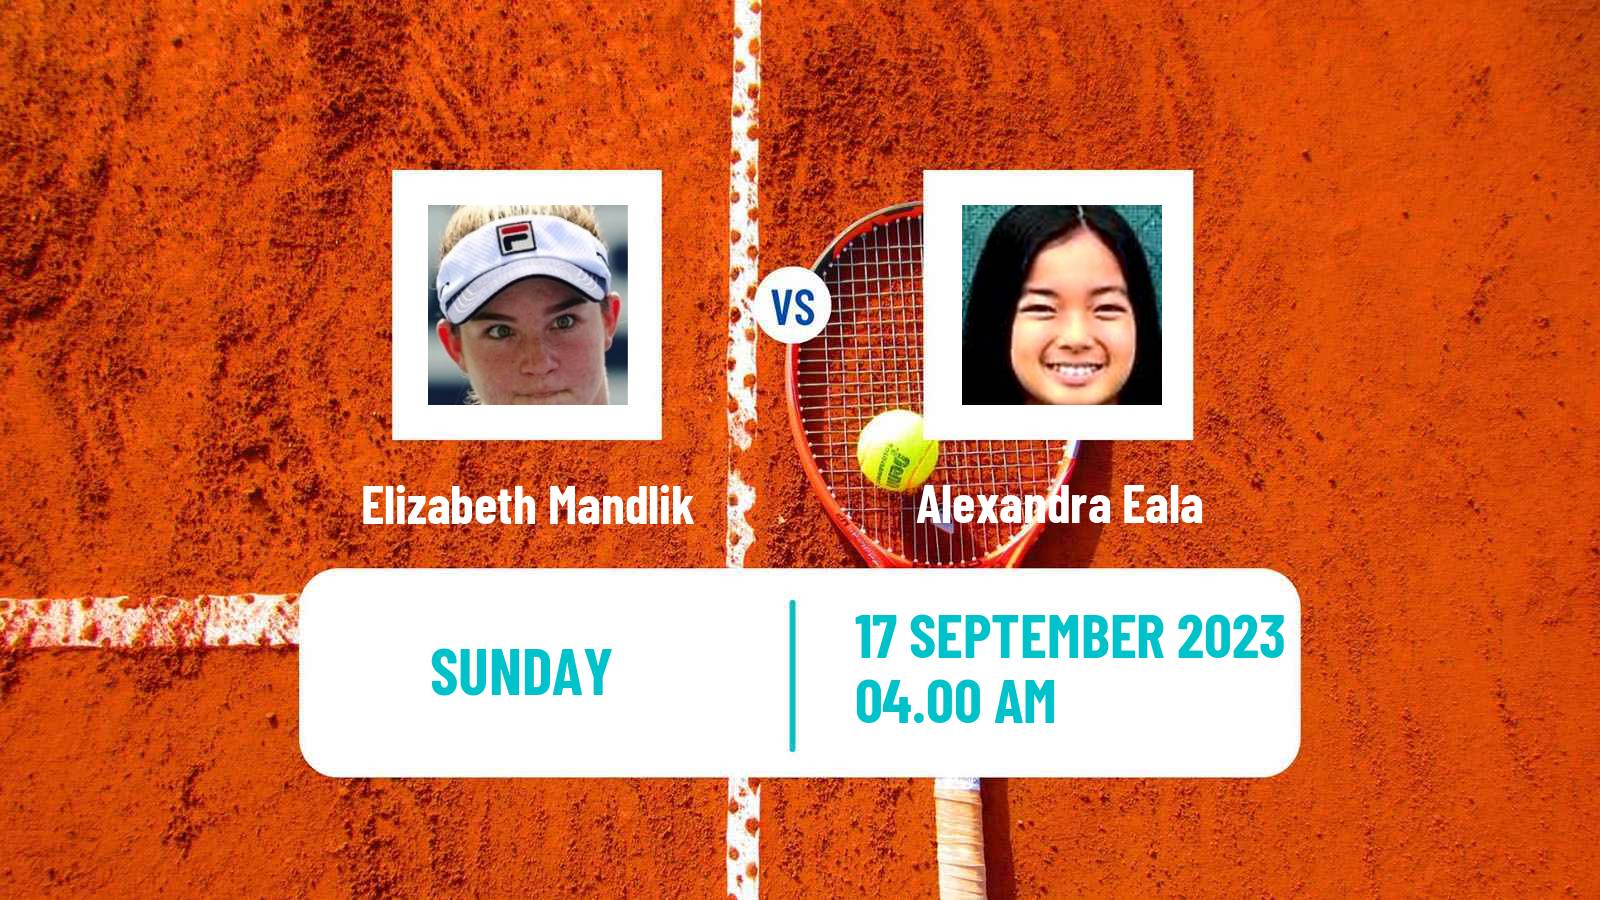 Tennis WTA Guangzhou Elizabeth Mandlik - Alexandra Eala